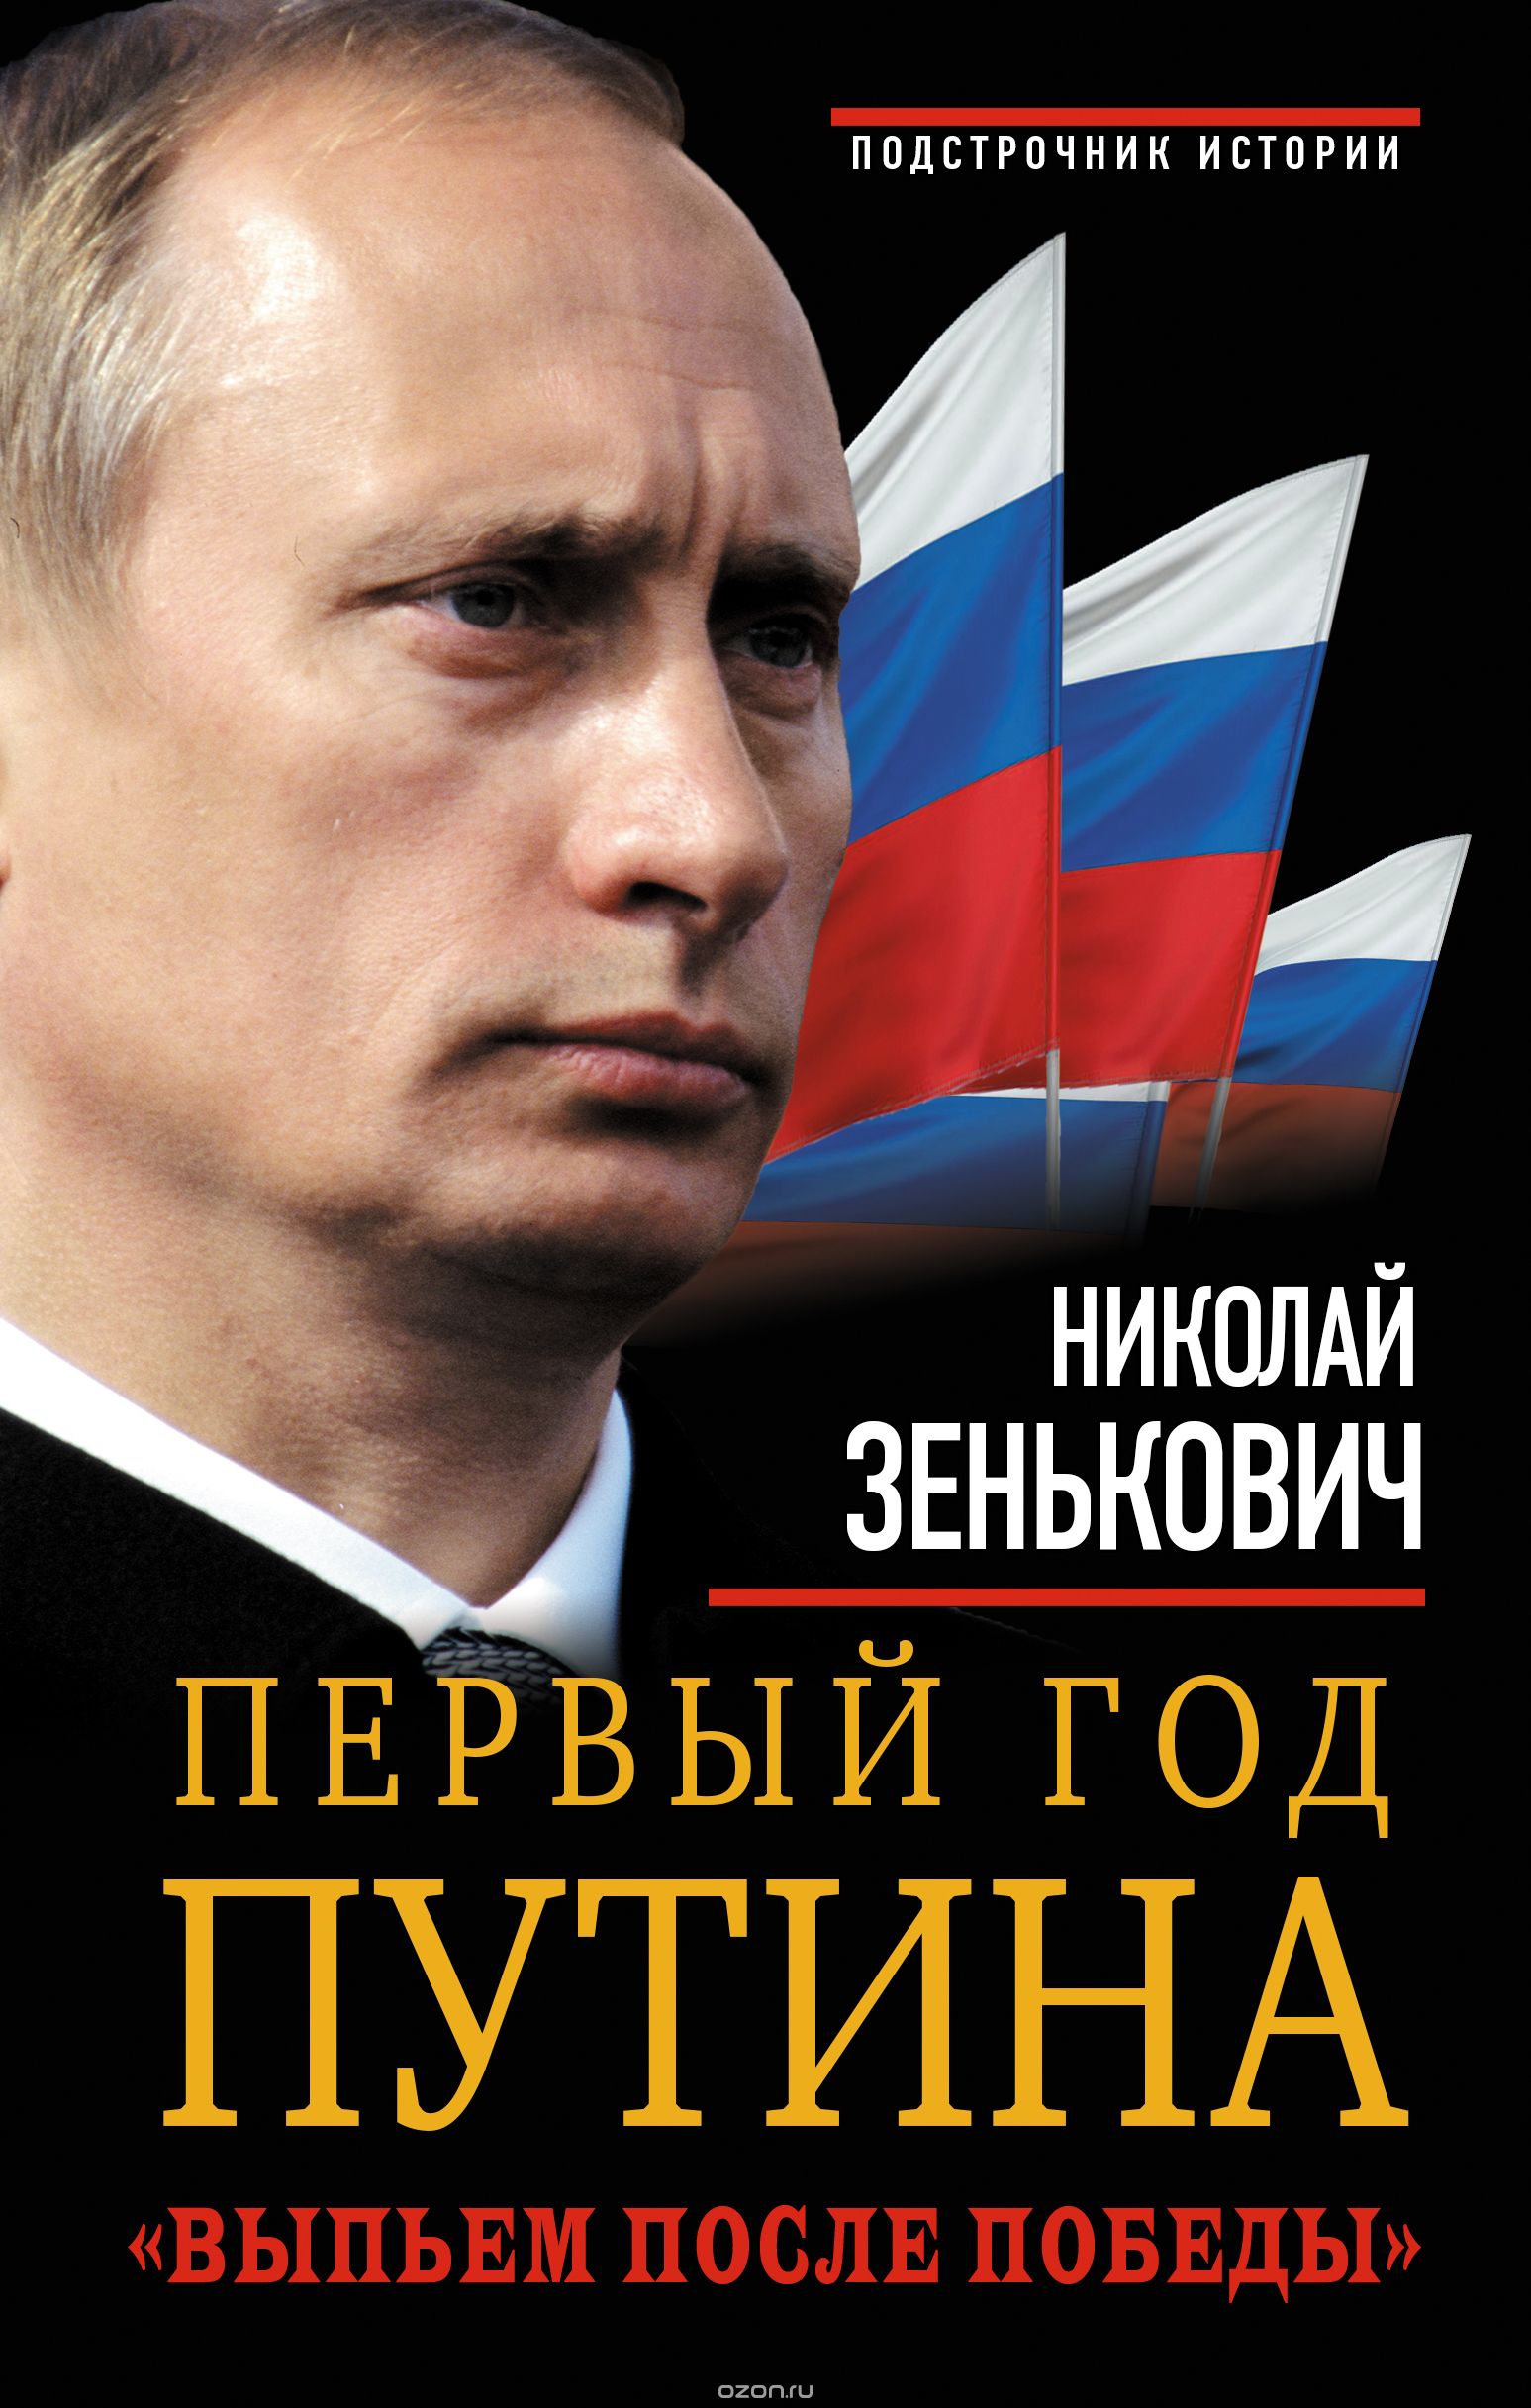 Скачать книгу "Первый год Путина. "Выпьем после победы", Н. А. Зенькович"